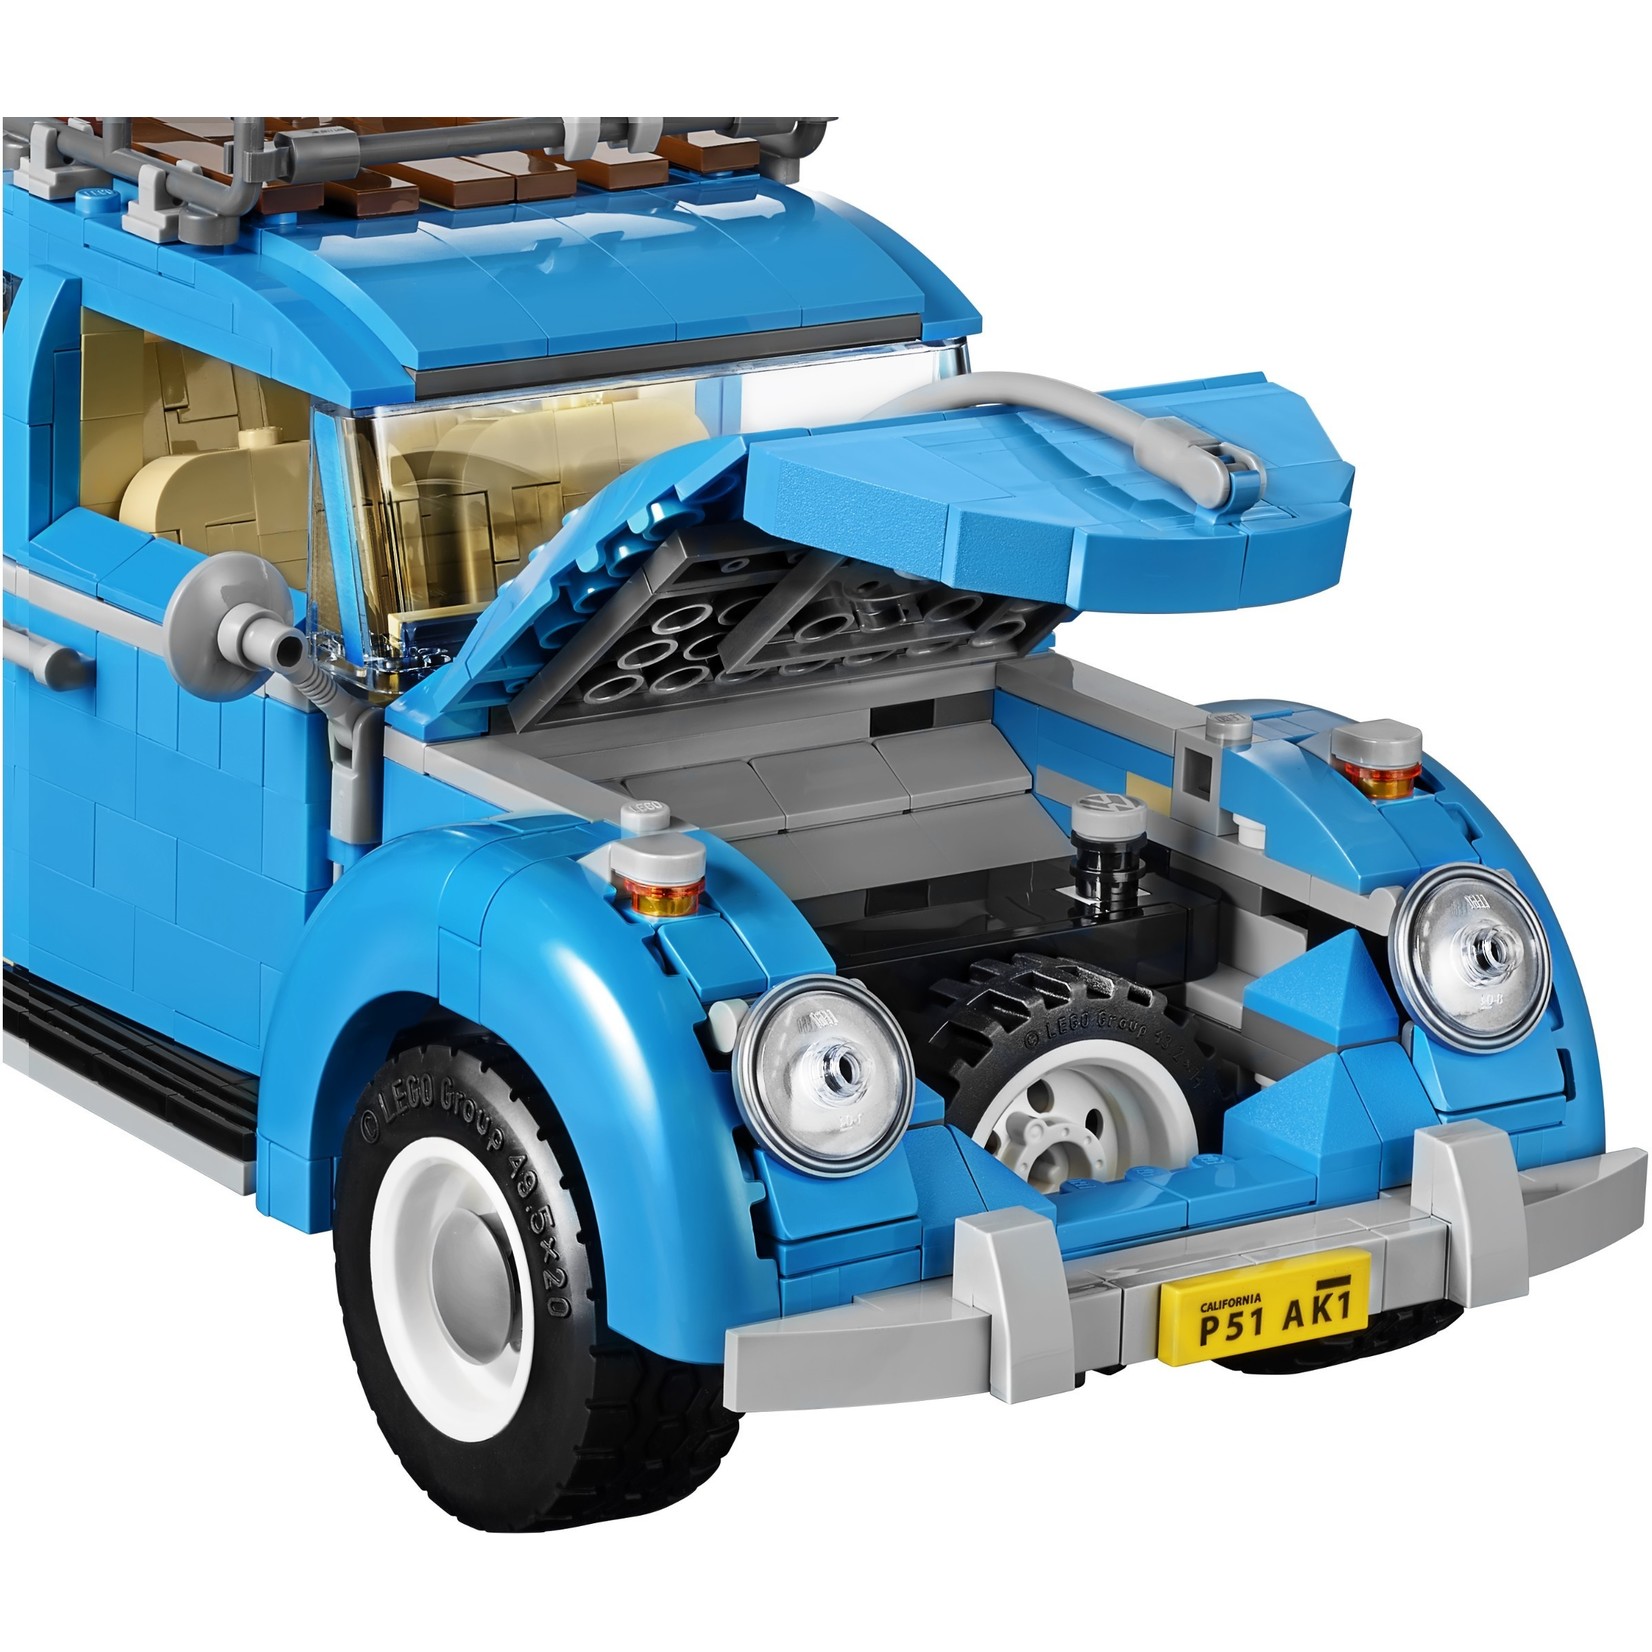 LEGO Volkswagen Kever - 10252